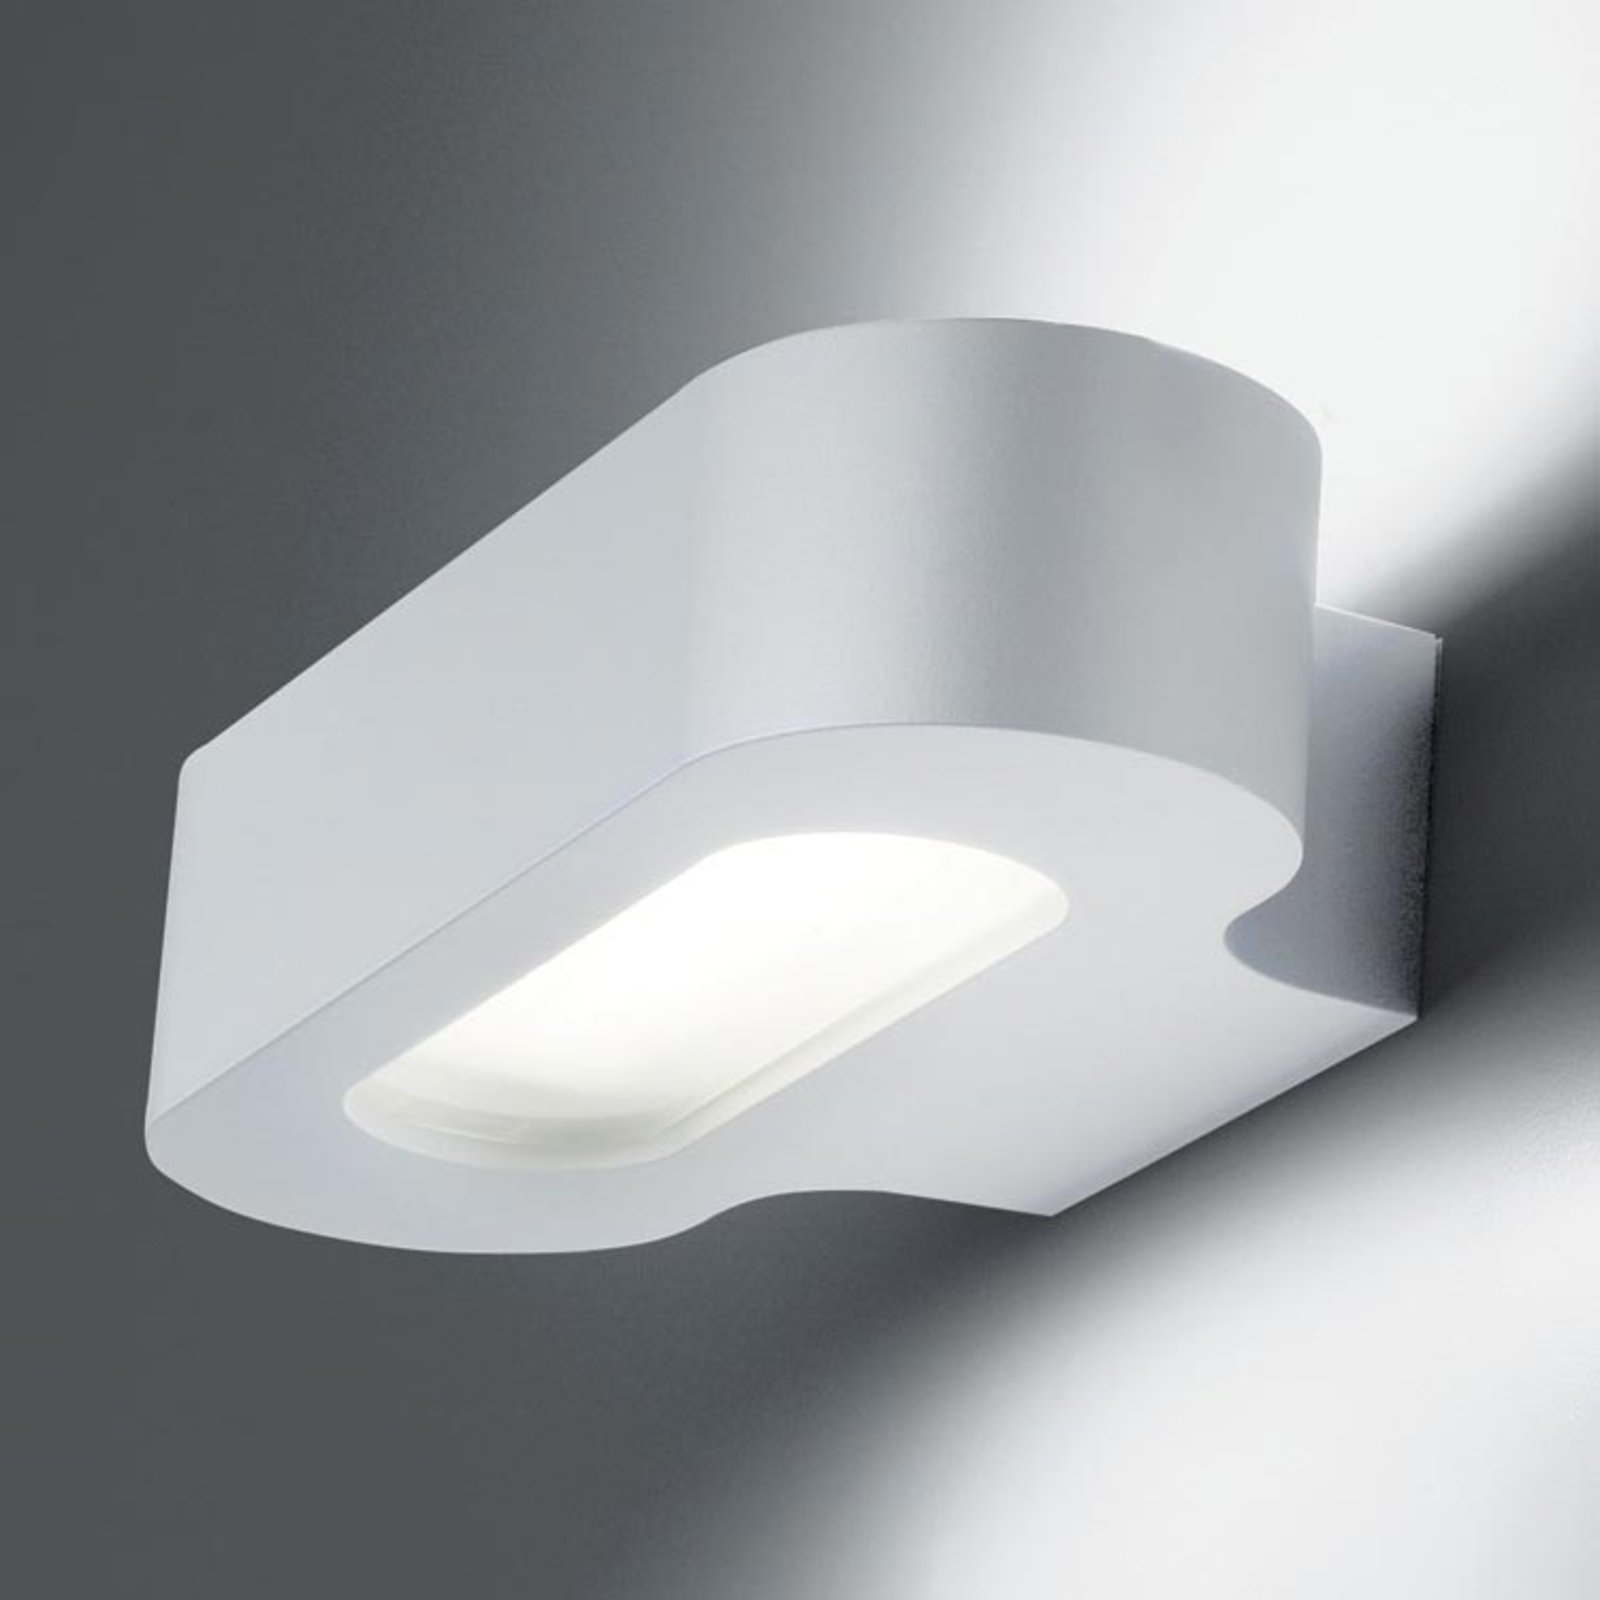 Artemide design-wandlamp R7s 21 cm | Lampen24.be